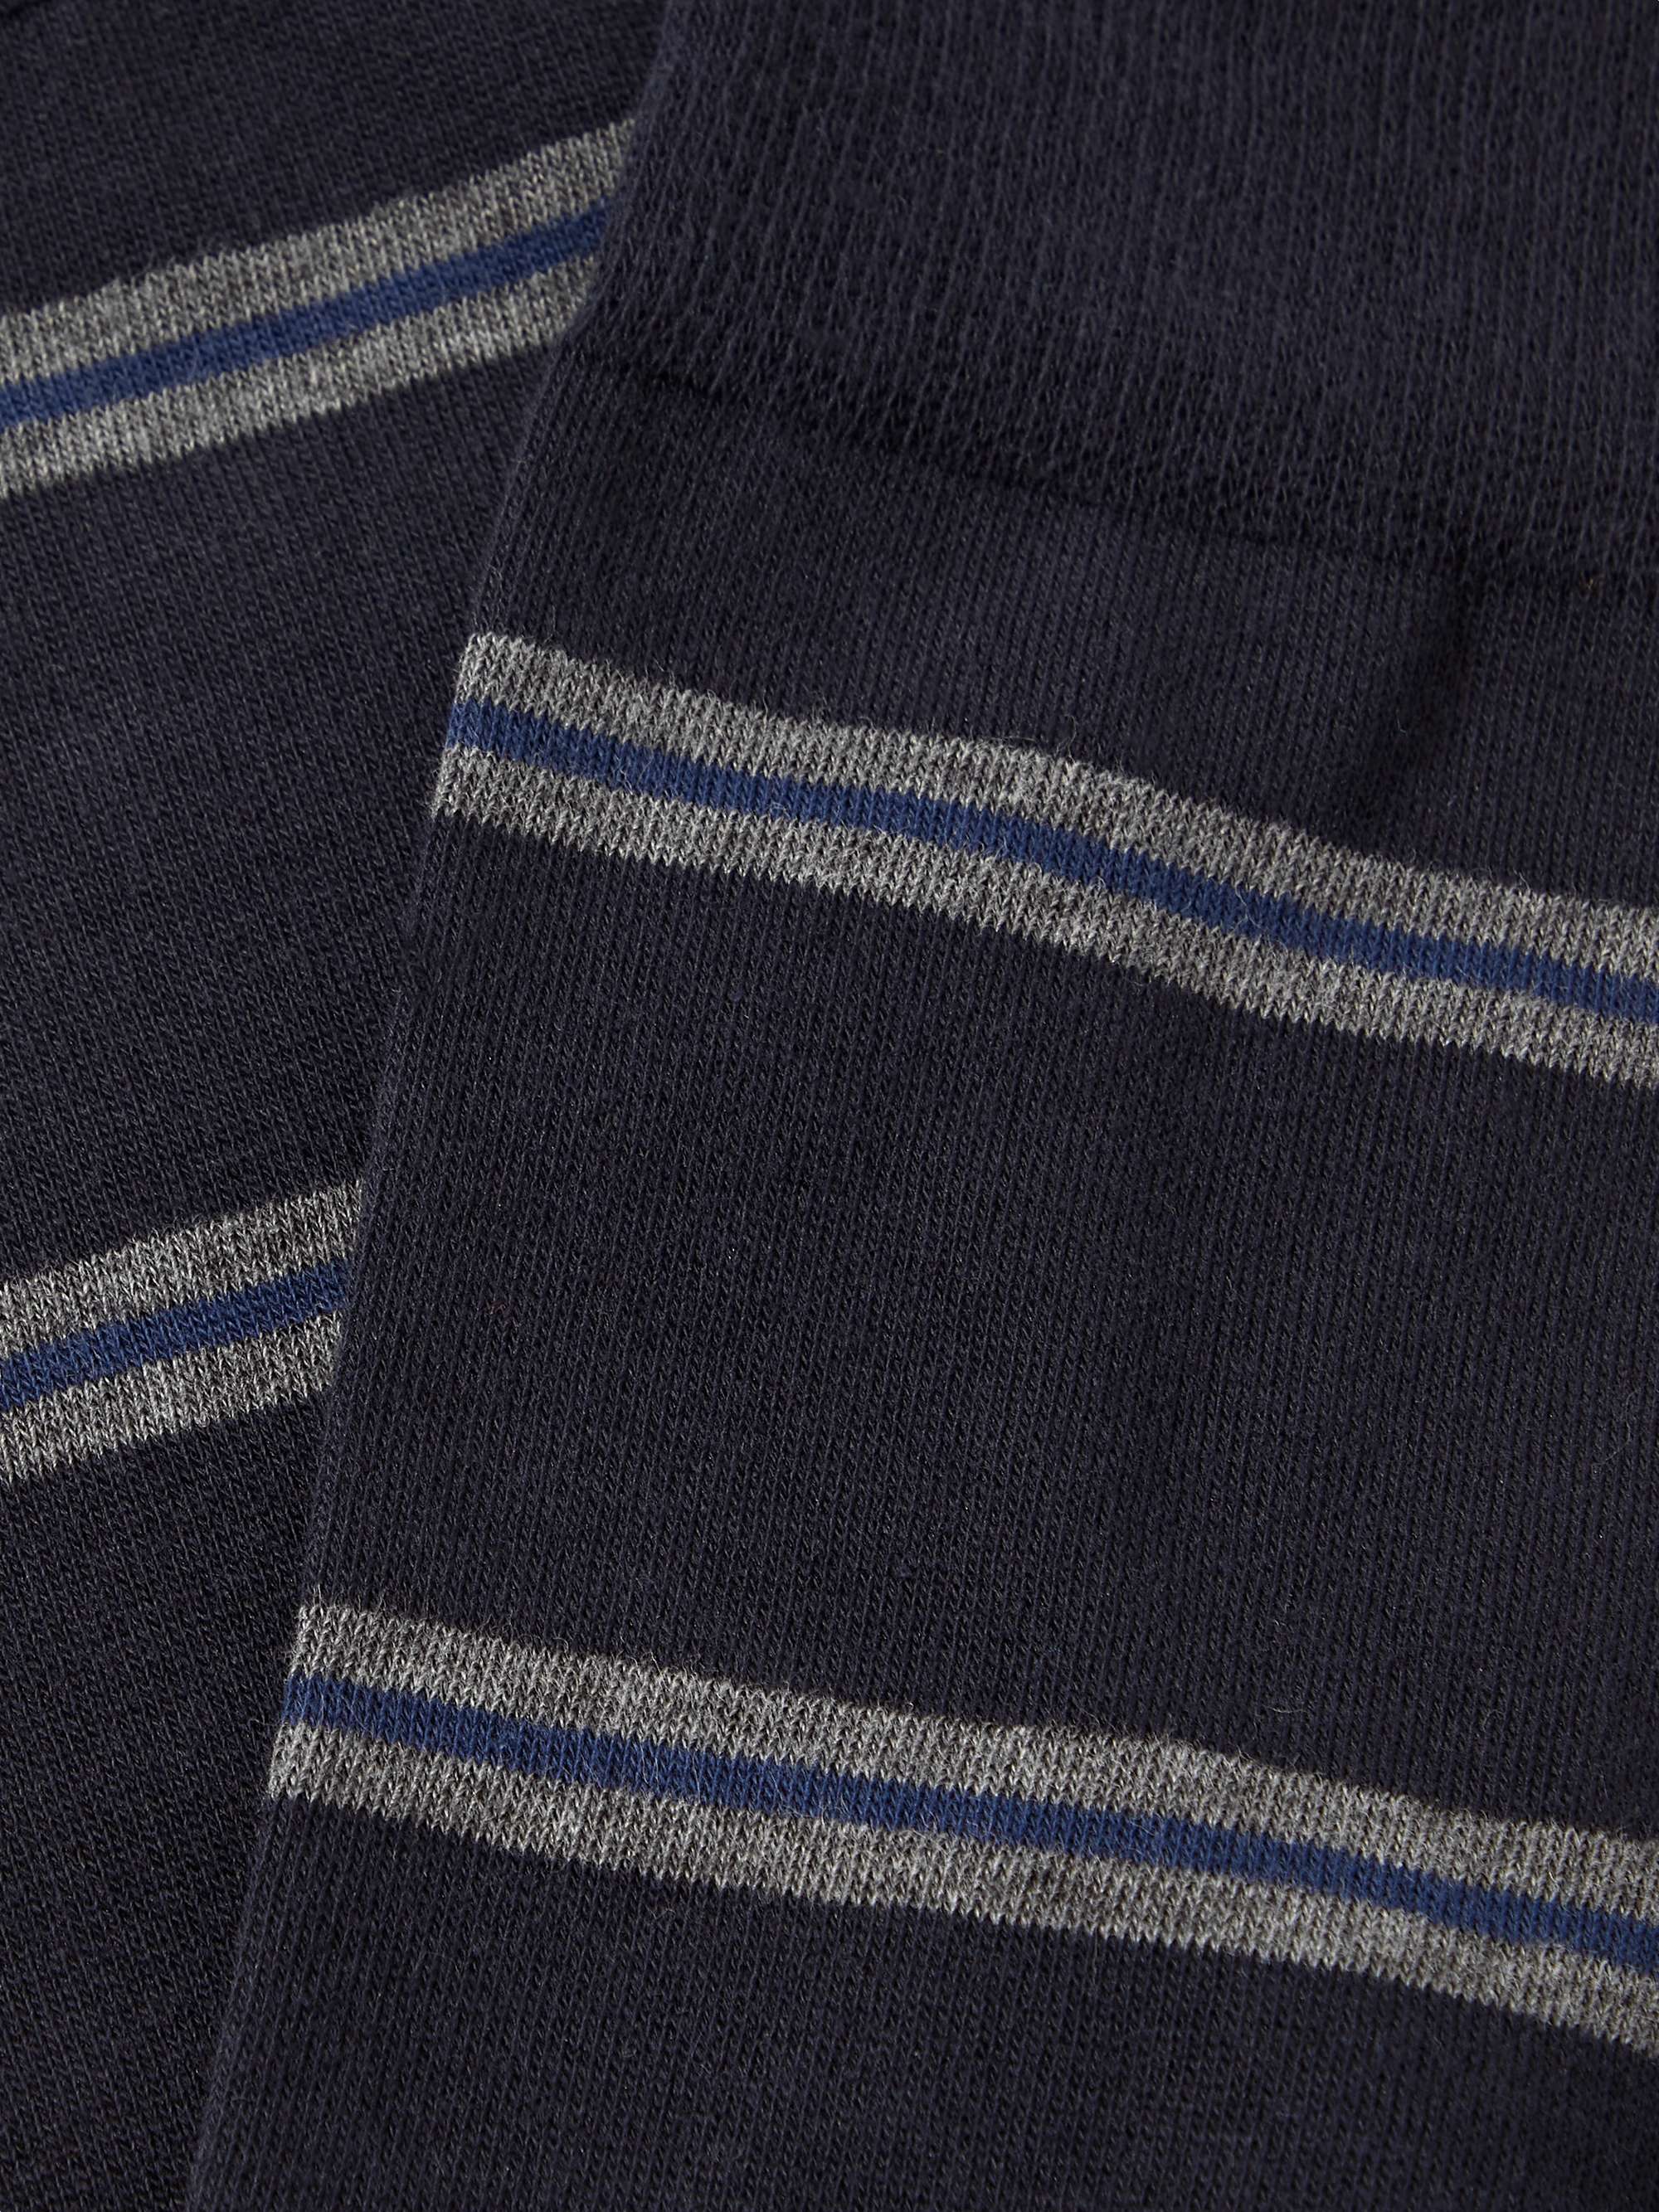 KINGSMAN Striped Cotton-Blend Socks